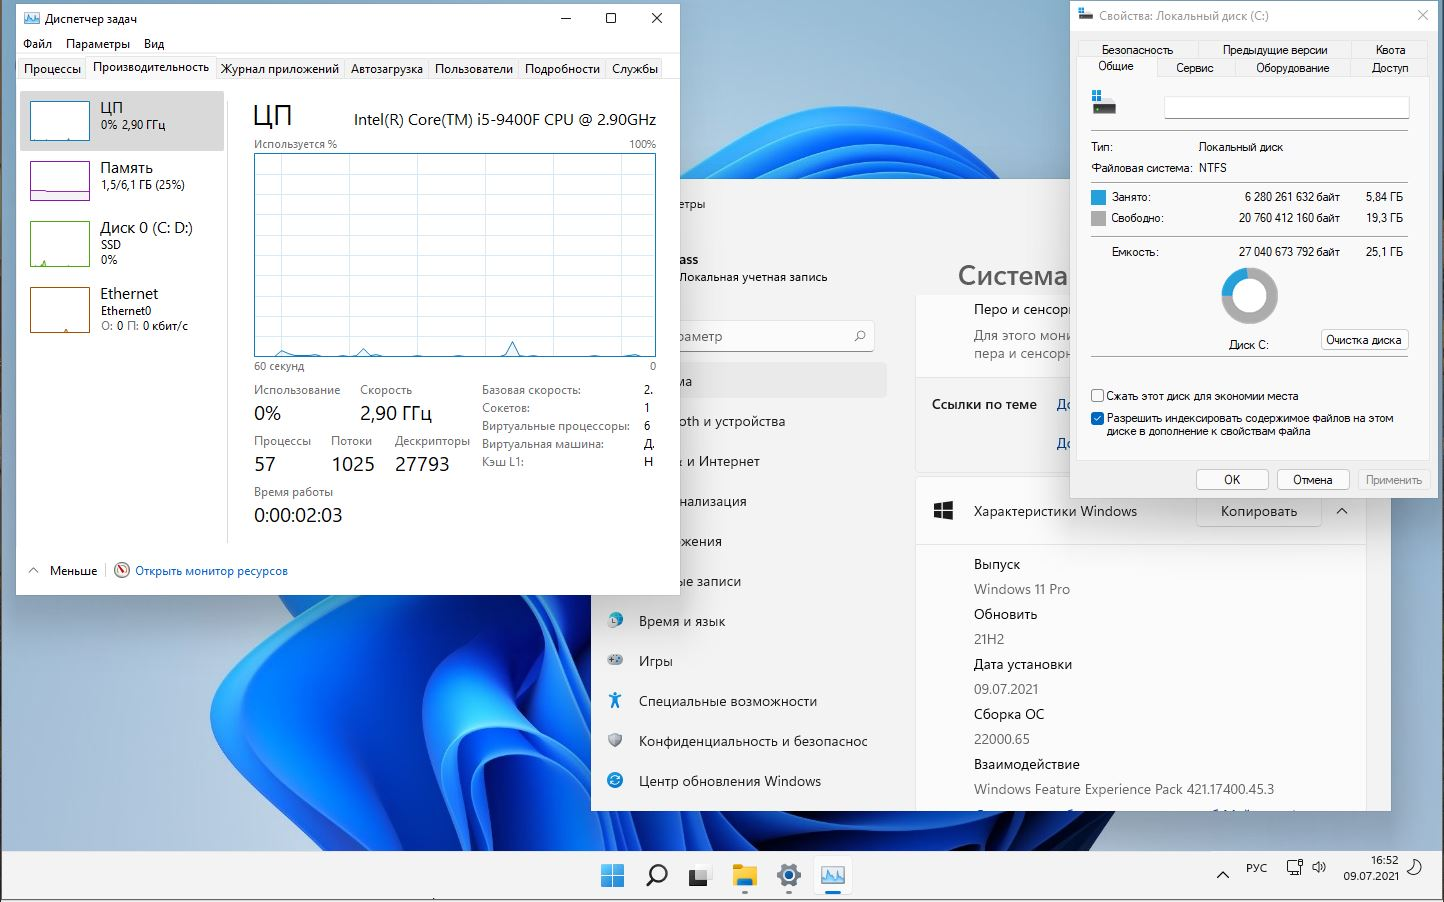 Windows 11 Pro 10.0.22000.65 co Release DREY by Lopatkin x64 2021 Rus